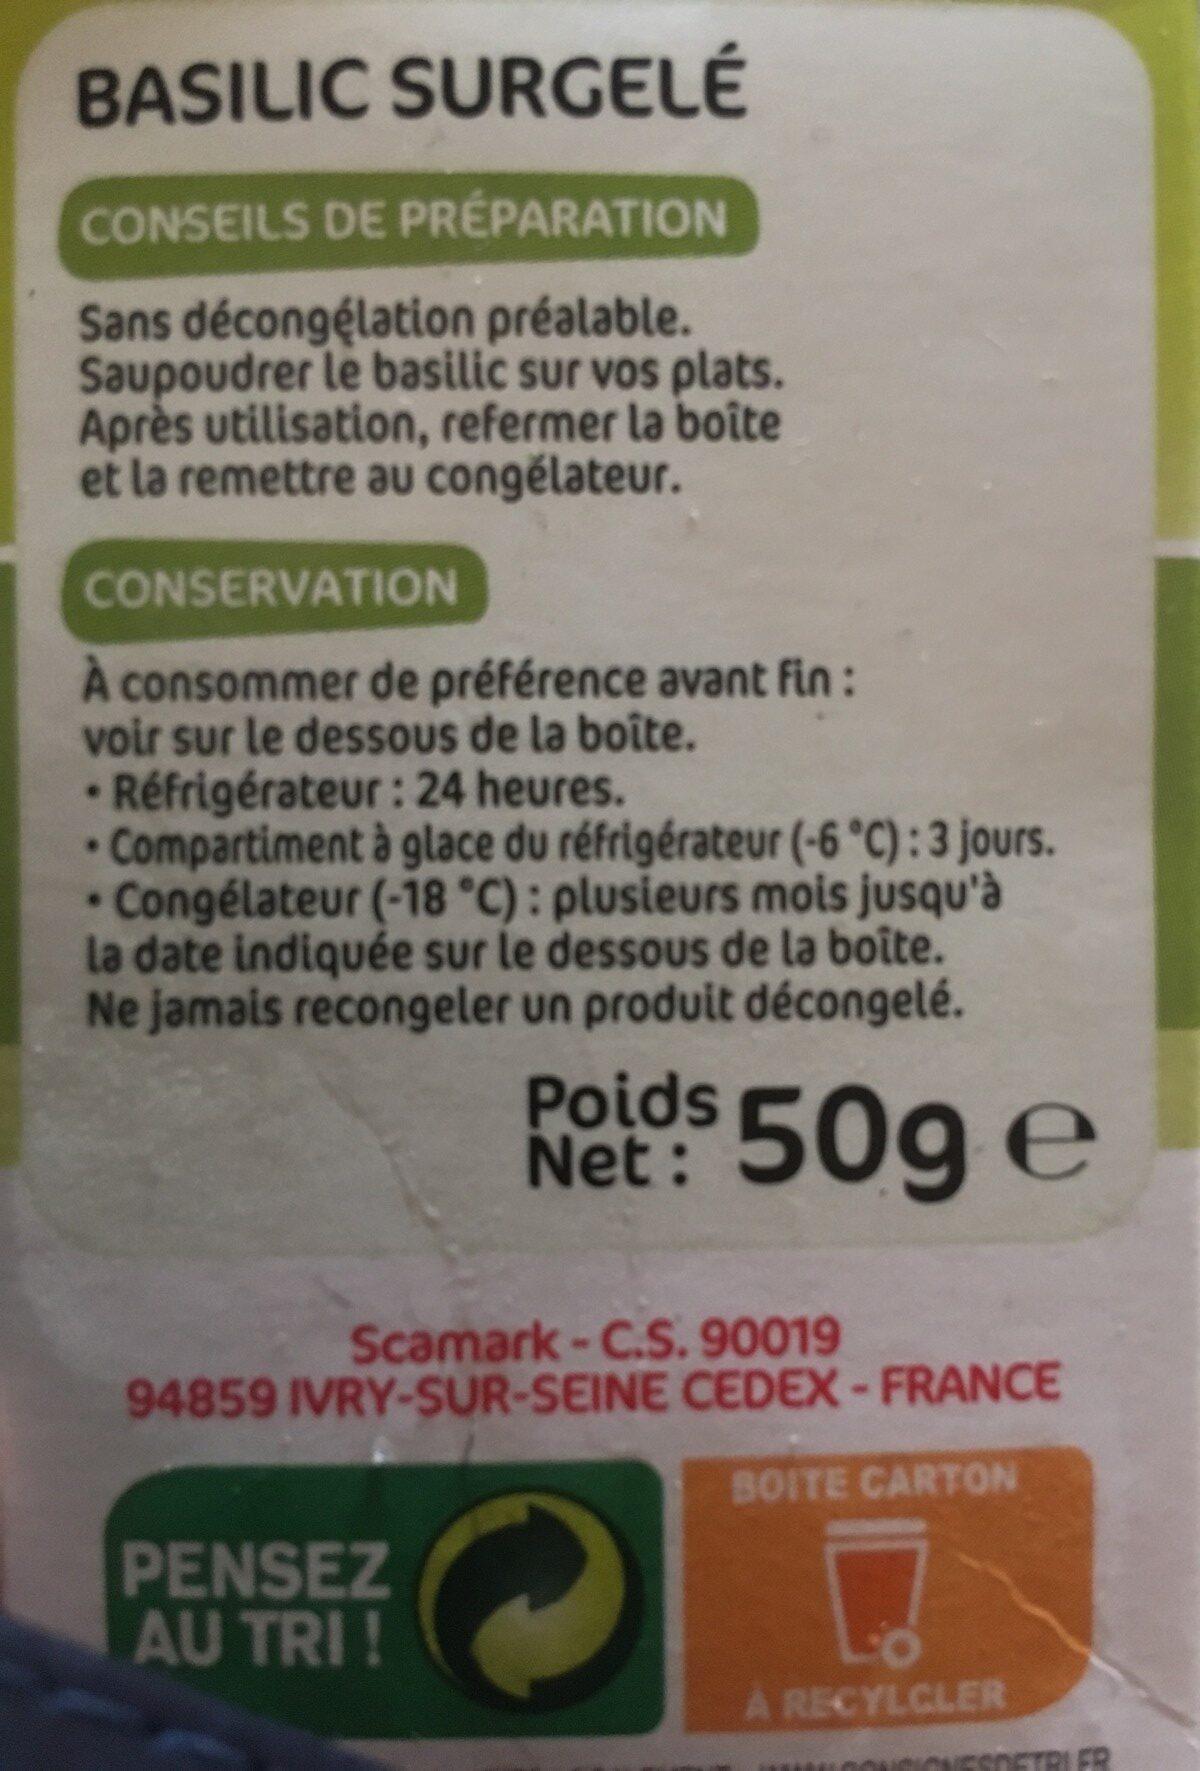 Basilic surgelé - Ingredients - fr